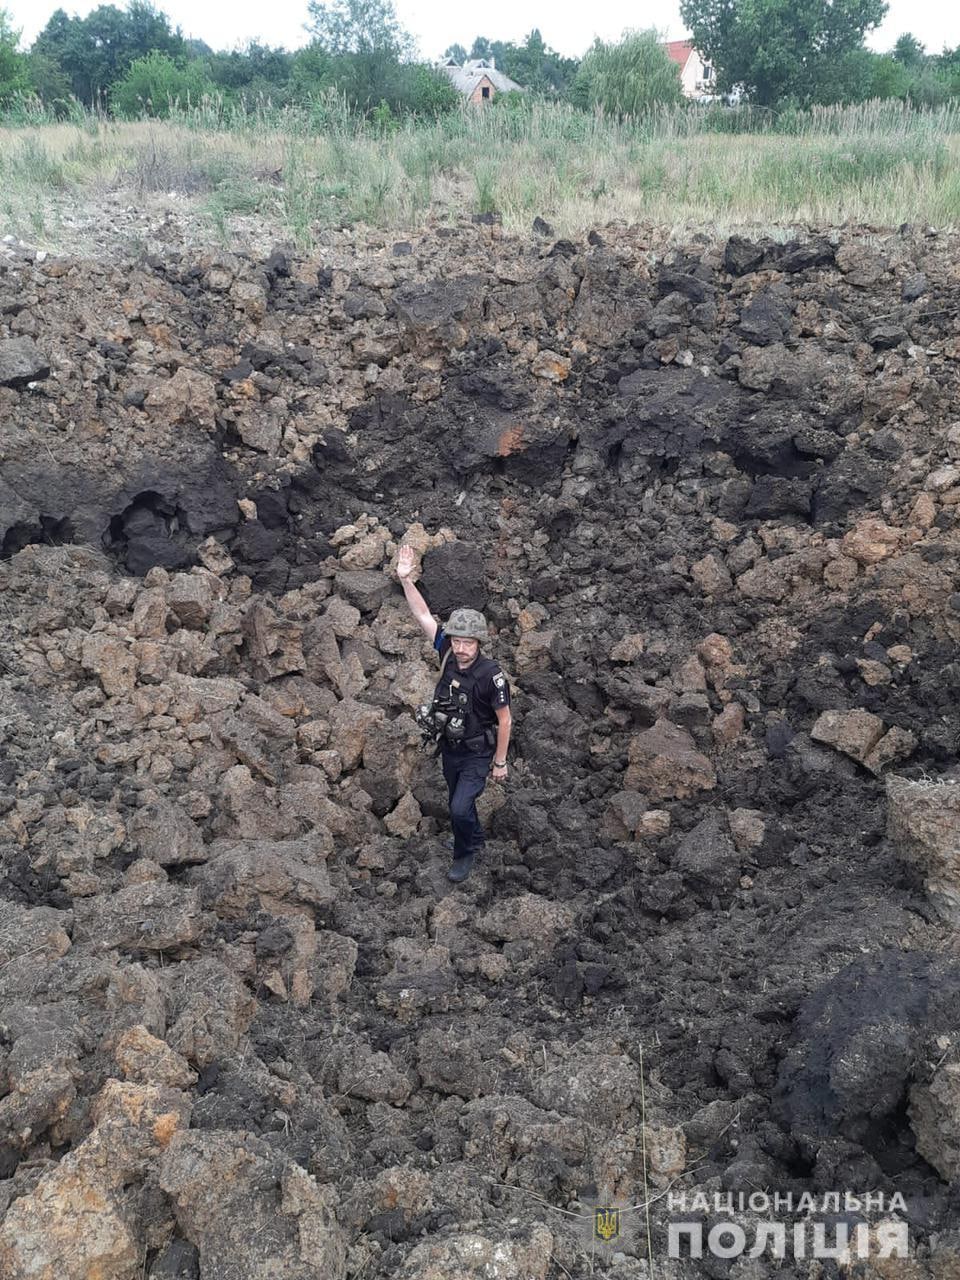 воронка на месте обстрела РФ в Донецкой области